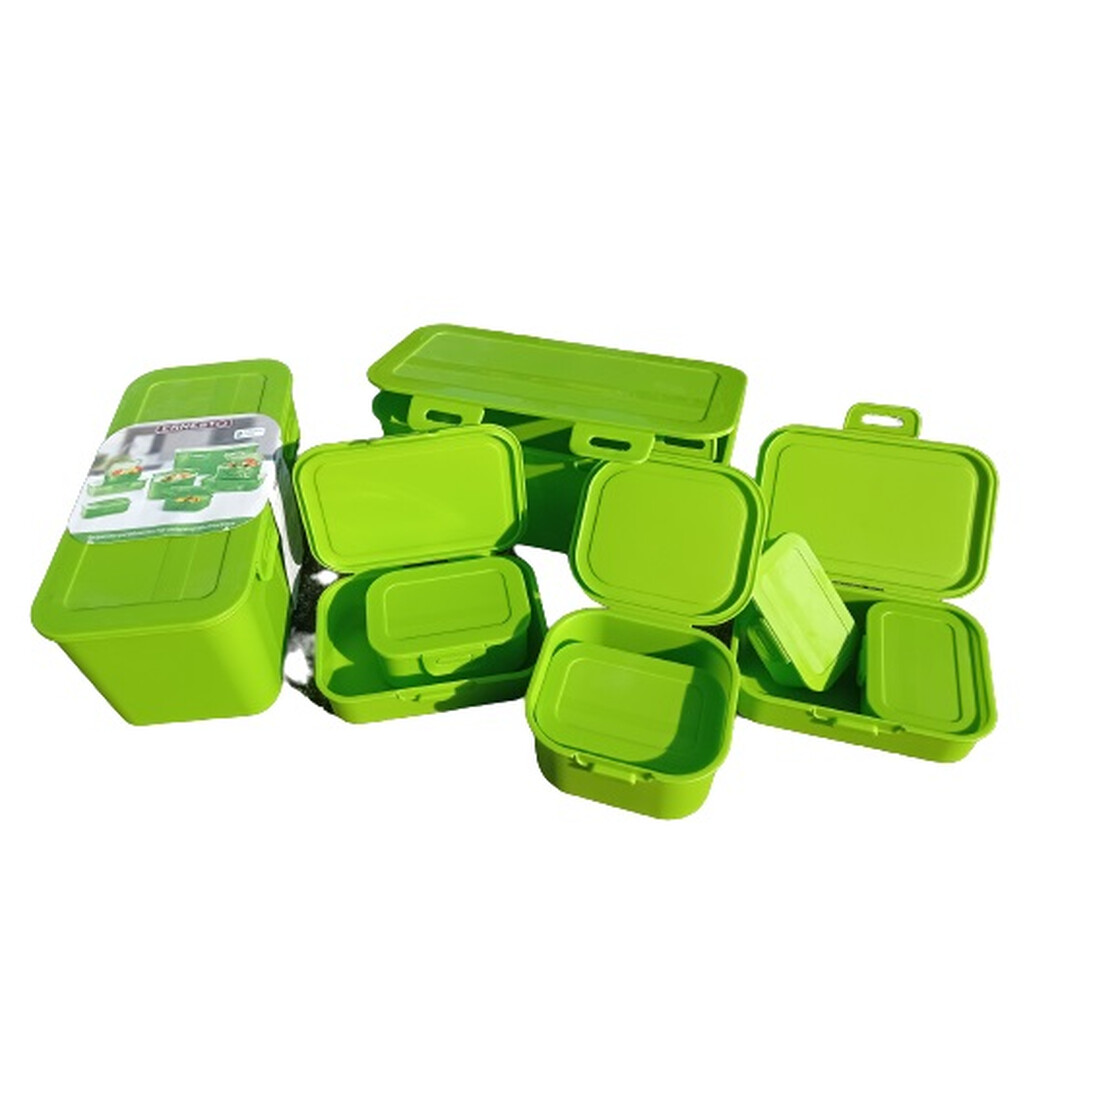 Ernesto - 7,99 8-fach Frischhaltedosen-Set € - Klickverschluss grün, mit